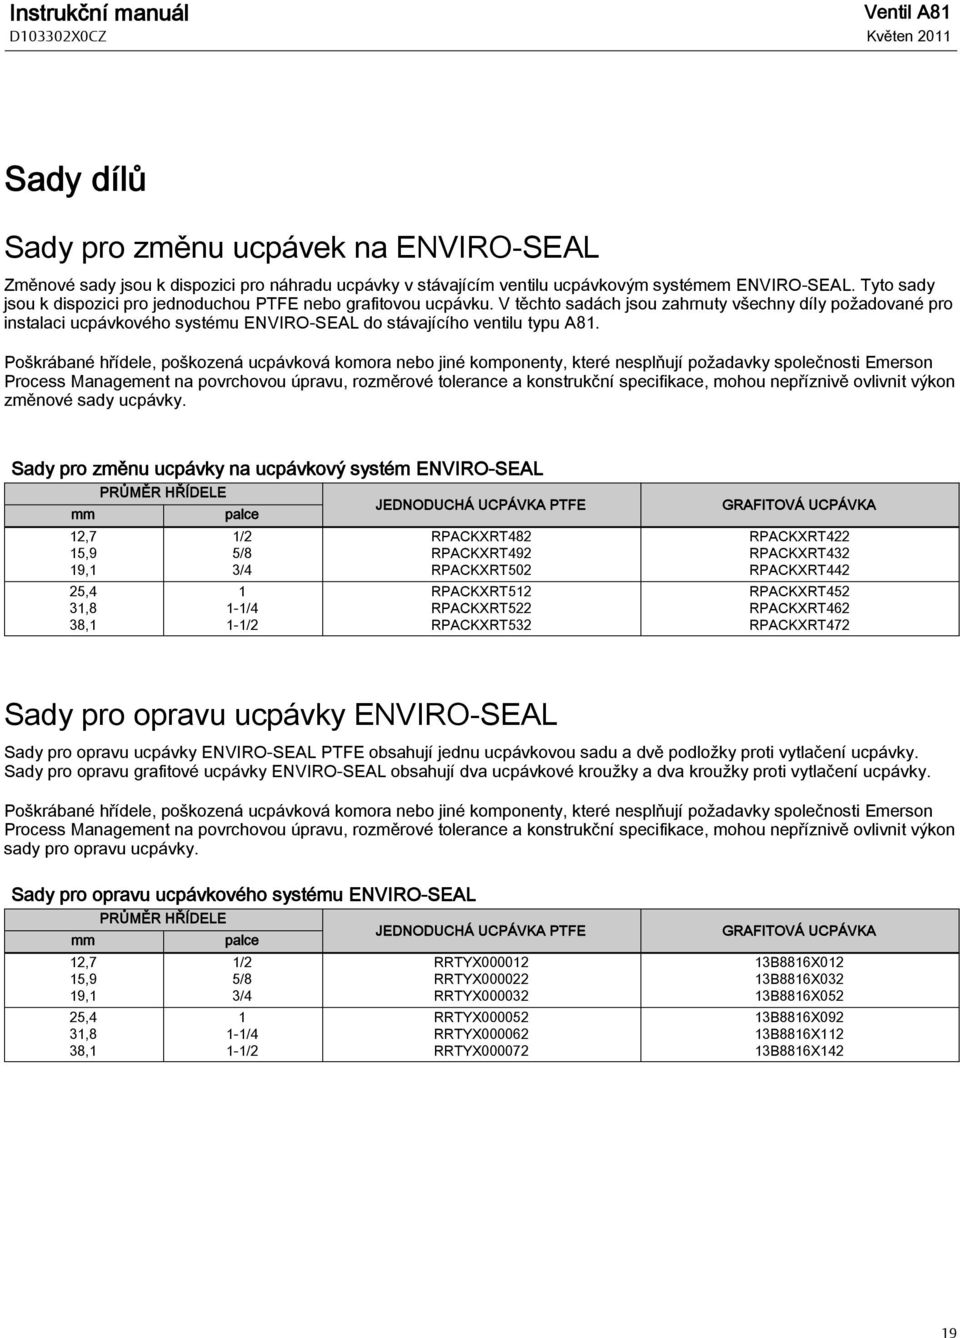 V těchto sadách jsou zahrnuty všechny díly požadované pro instalaci ucpávkového systému ENVIRO-SEAL do stávajícího ventilu typu A81.